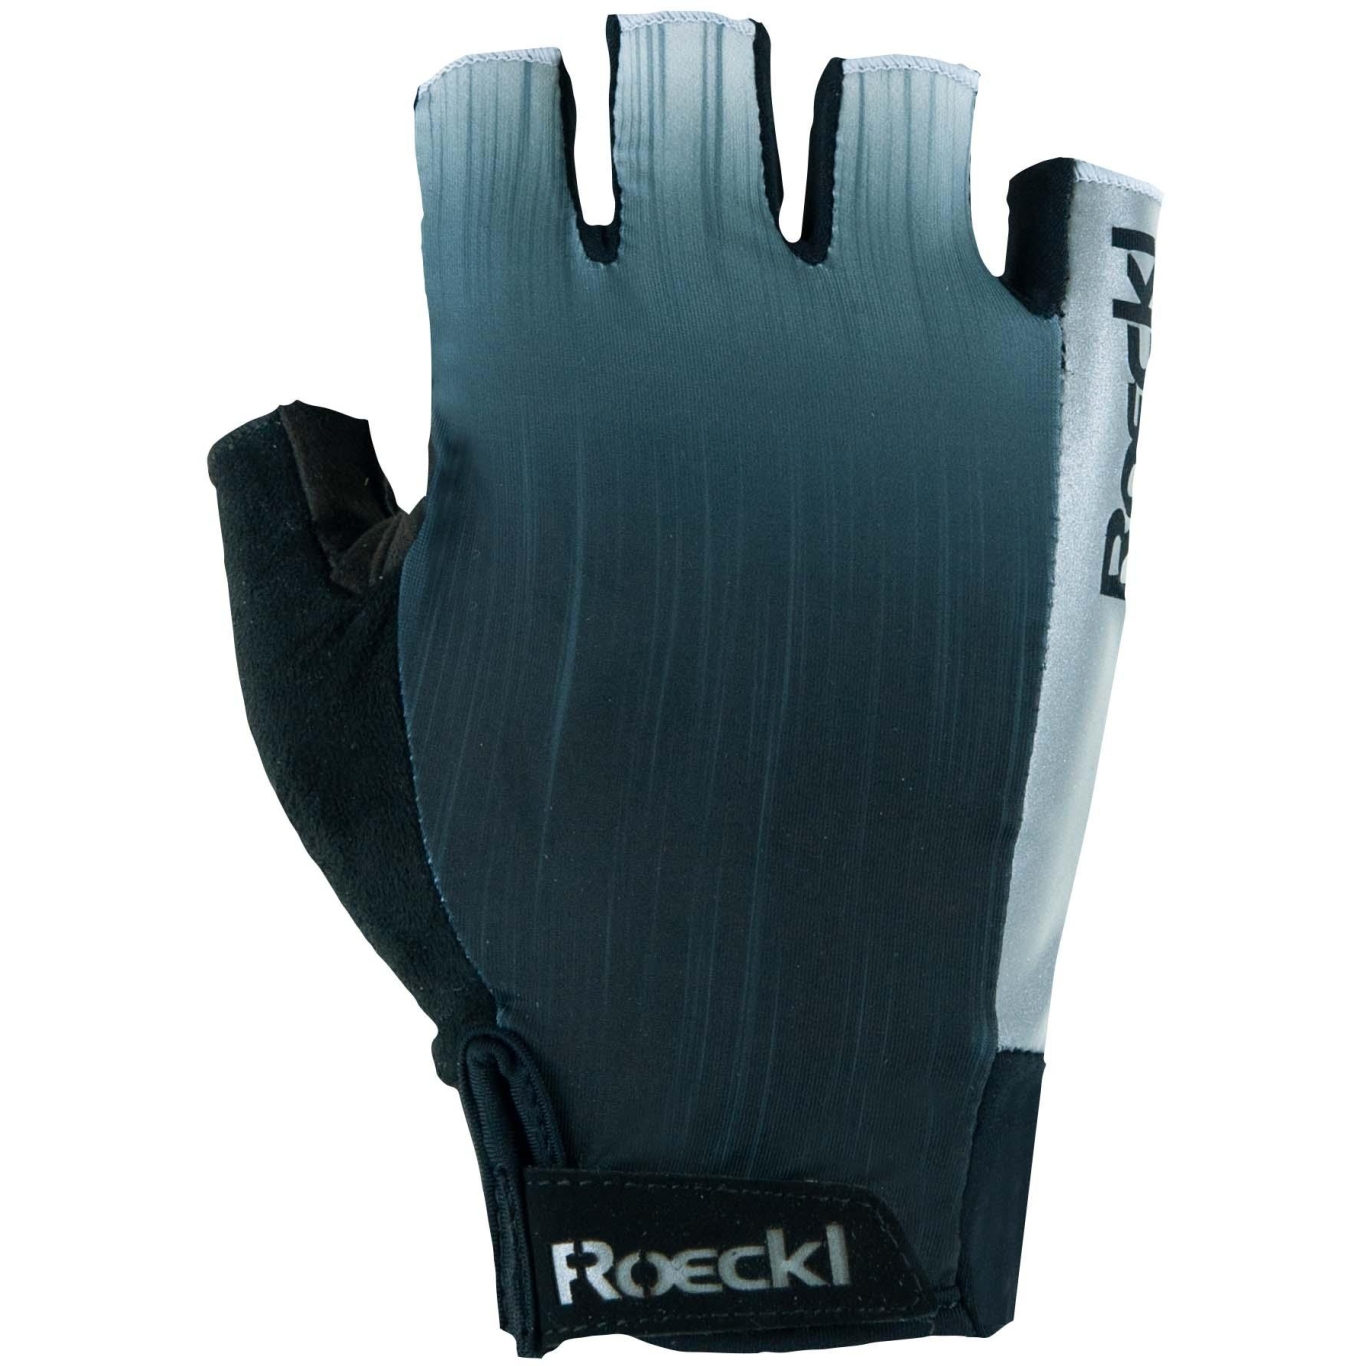 Produktbild von Roeckl Sports Illasi Fahrradhandschuhe - steel grey 8420